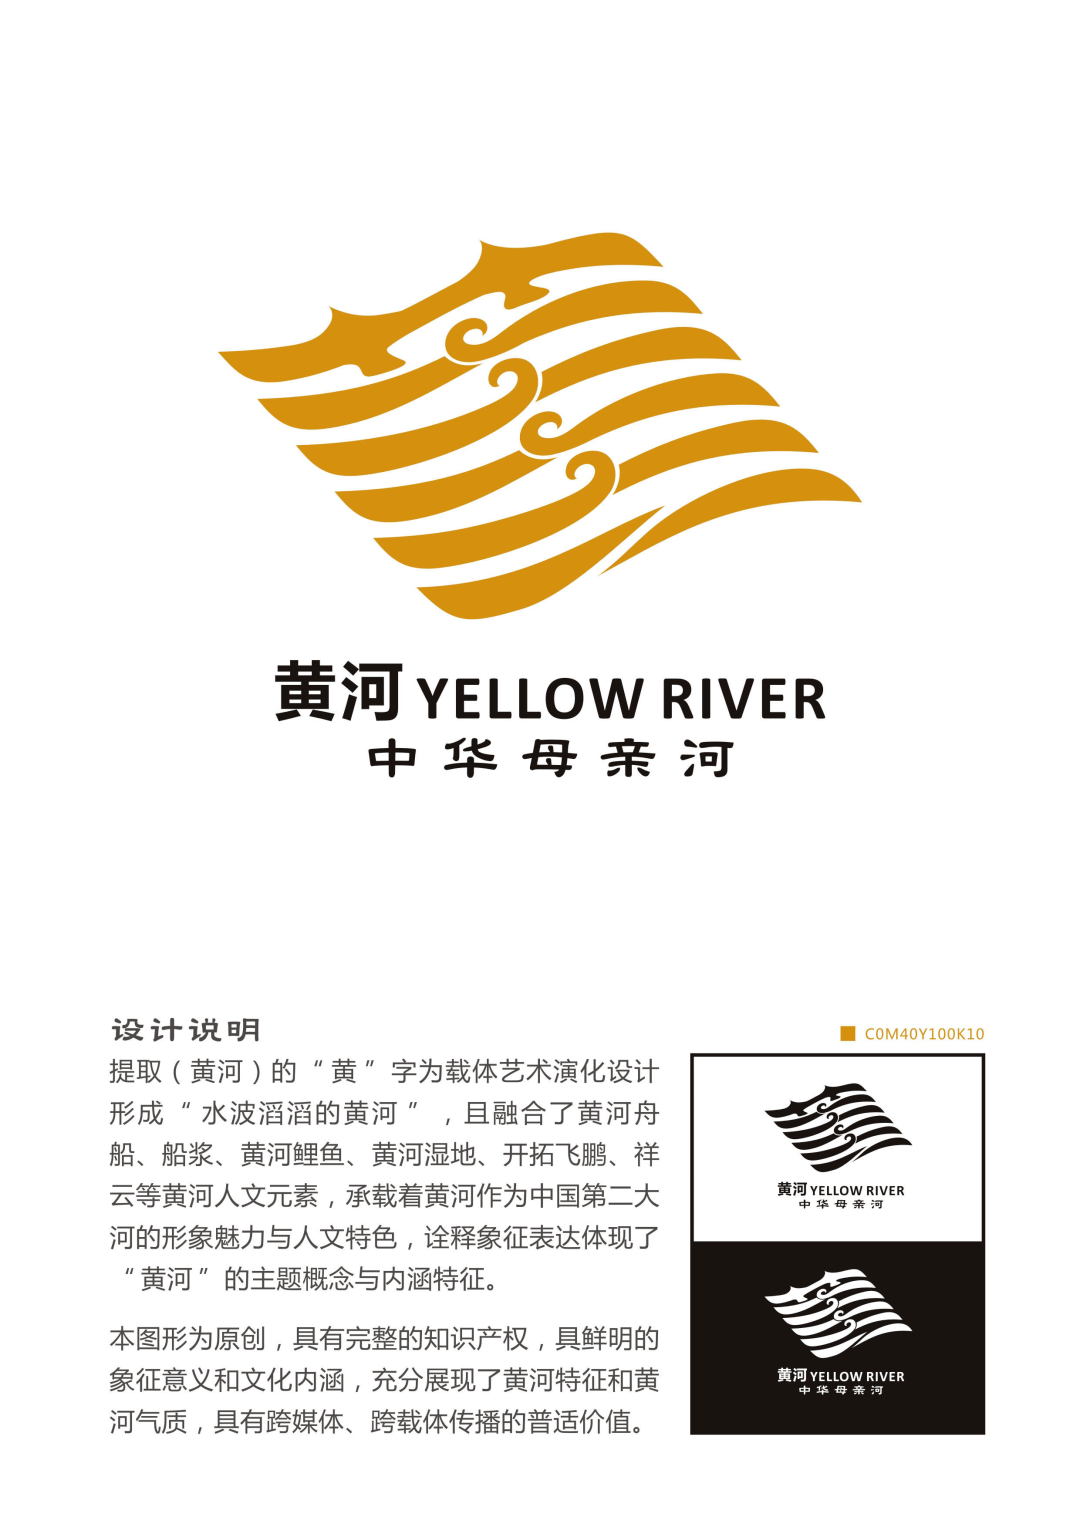 黄河标志的构图要素图片